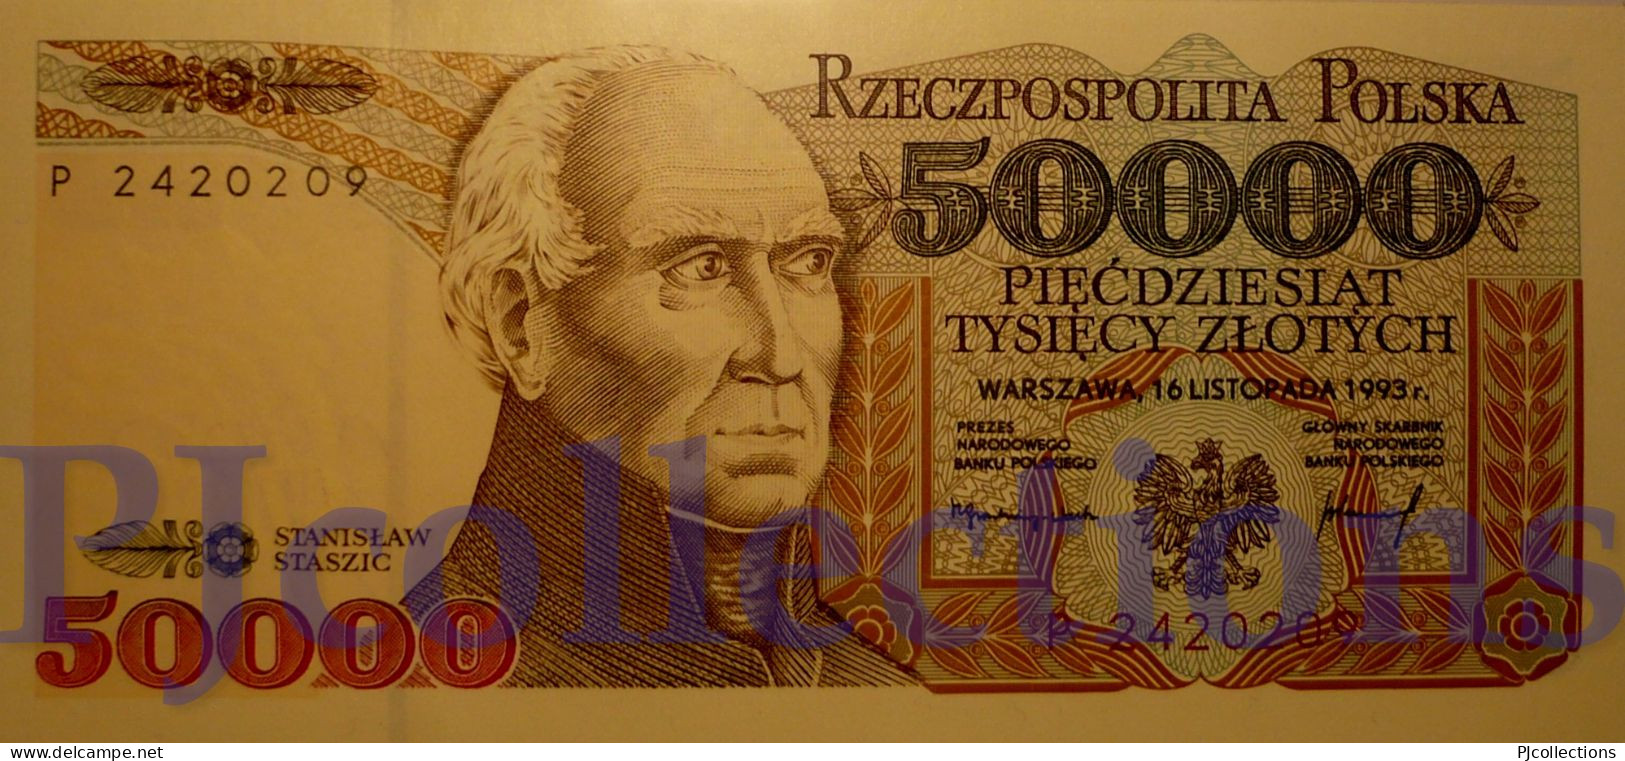 POLONIA - POLAND 50000 ZLOTYCH 1993 PICK 159a UNC - Poland